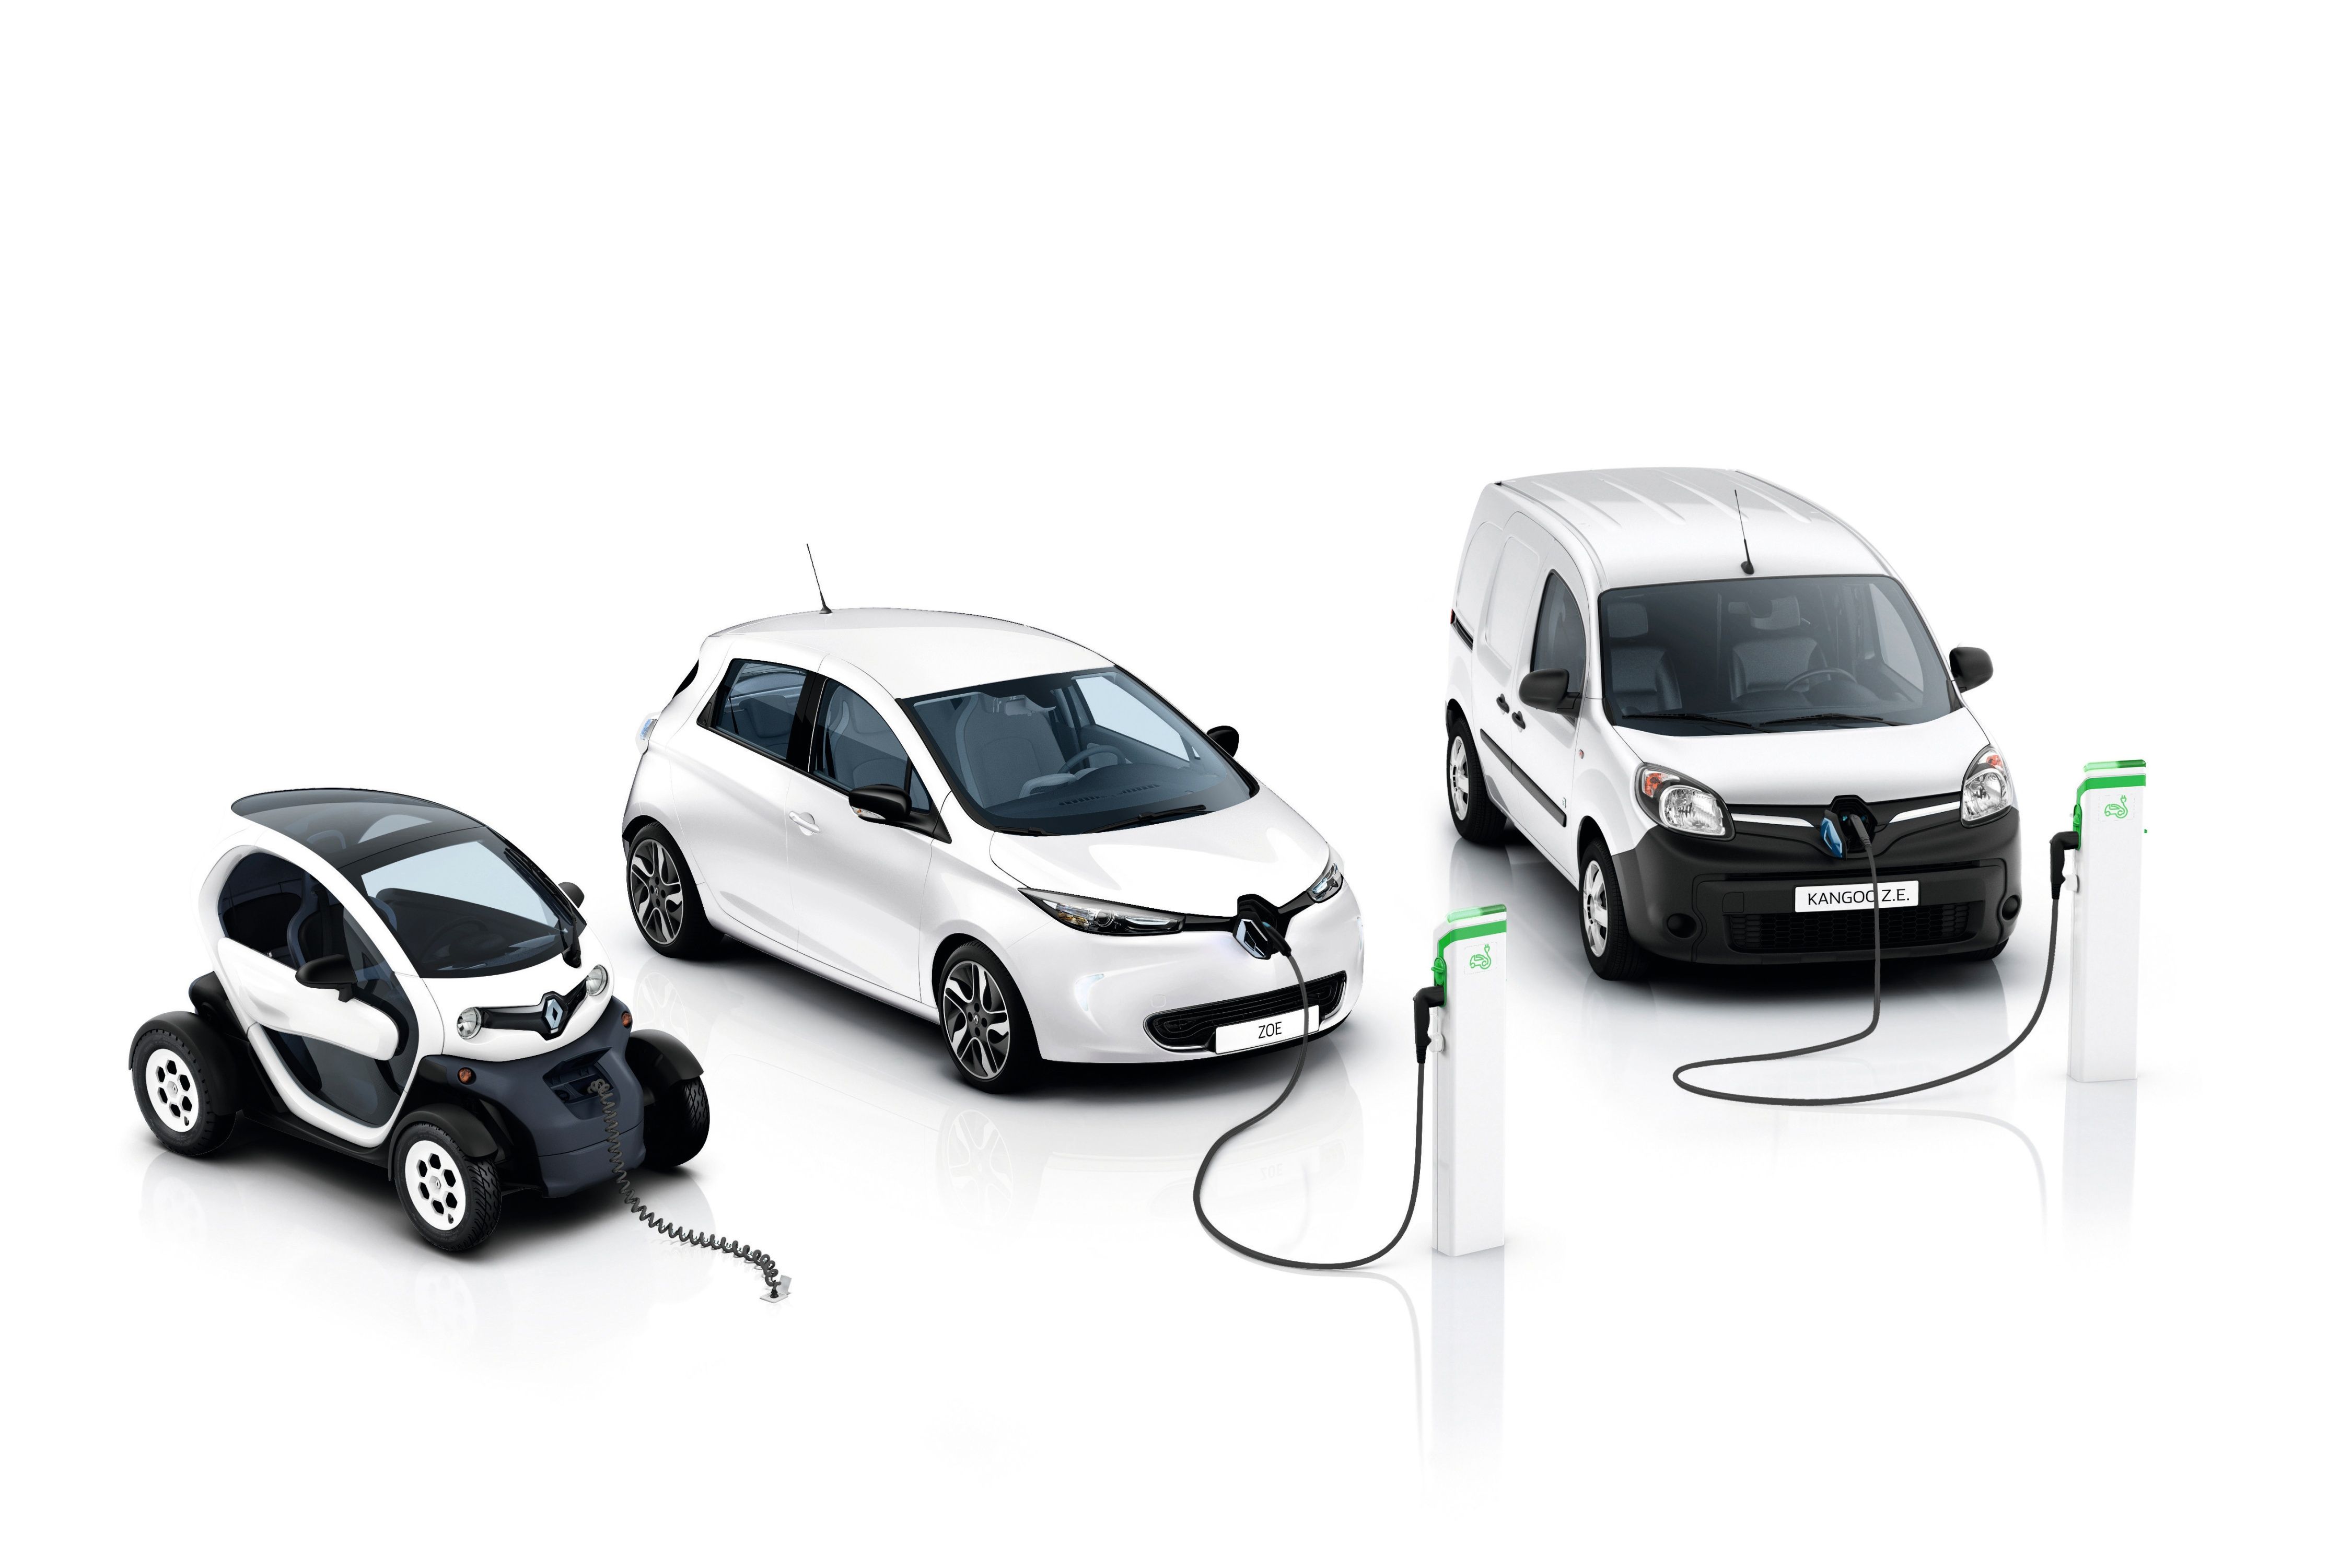 Ab 2030 will Renault nur noch Elektroautos anbieten